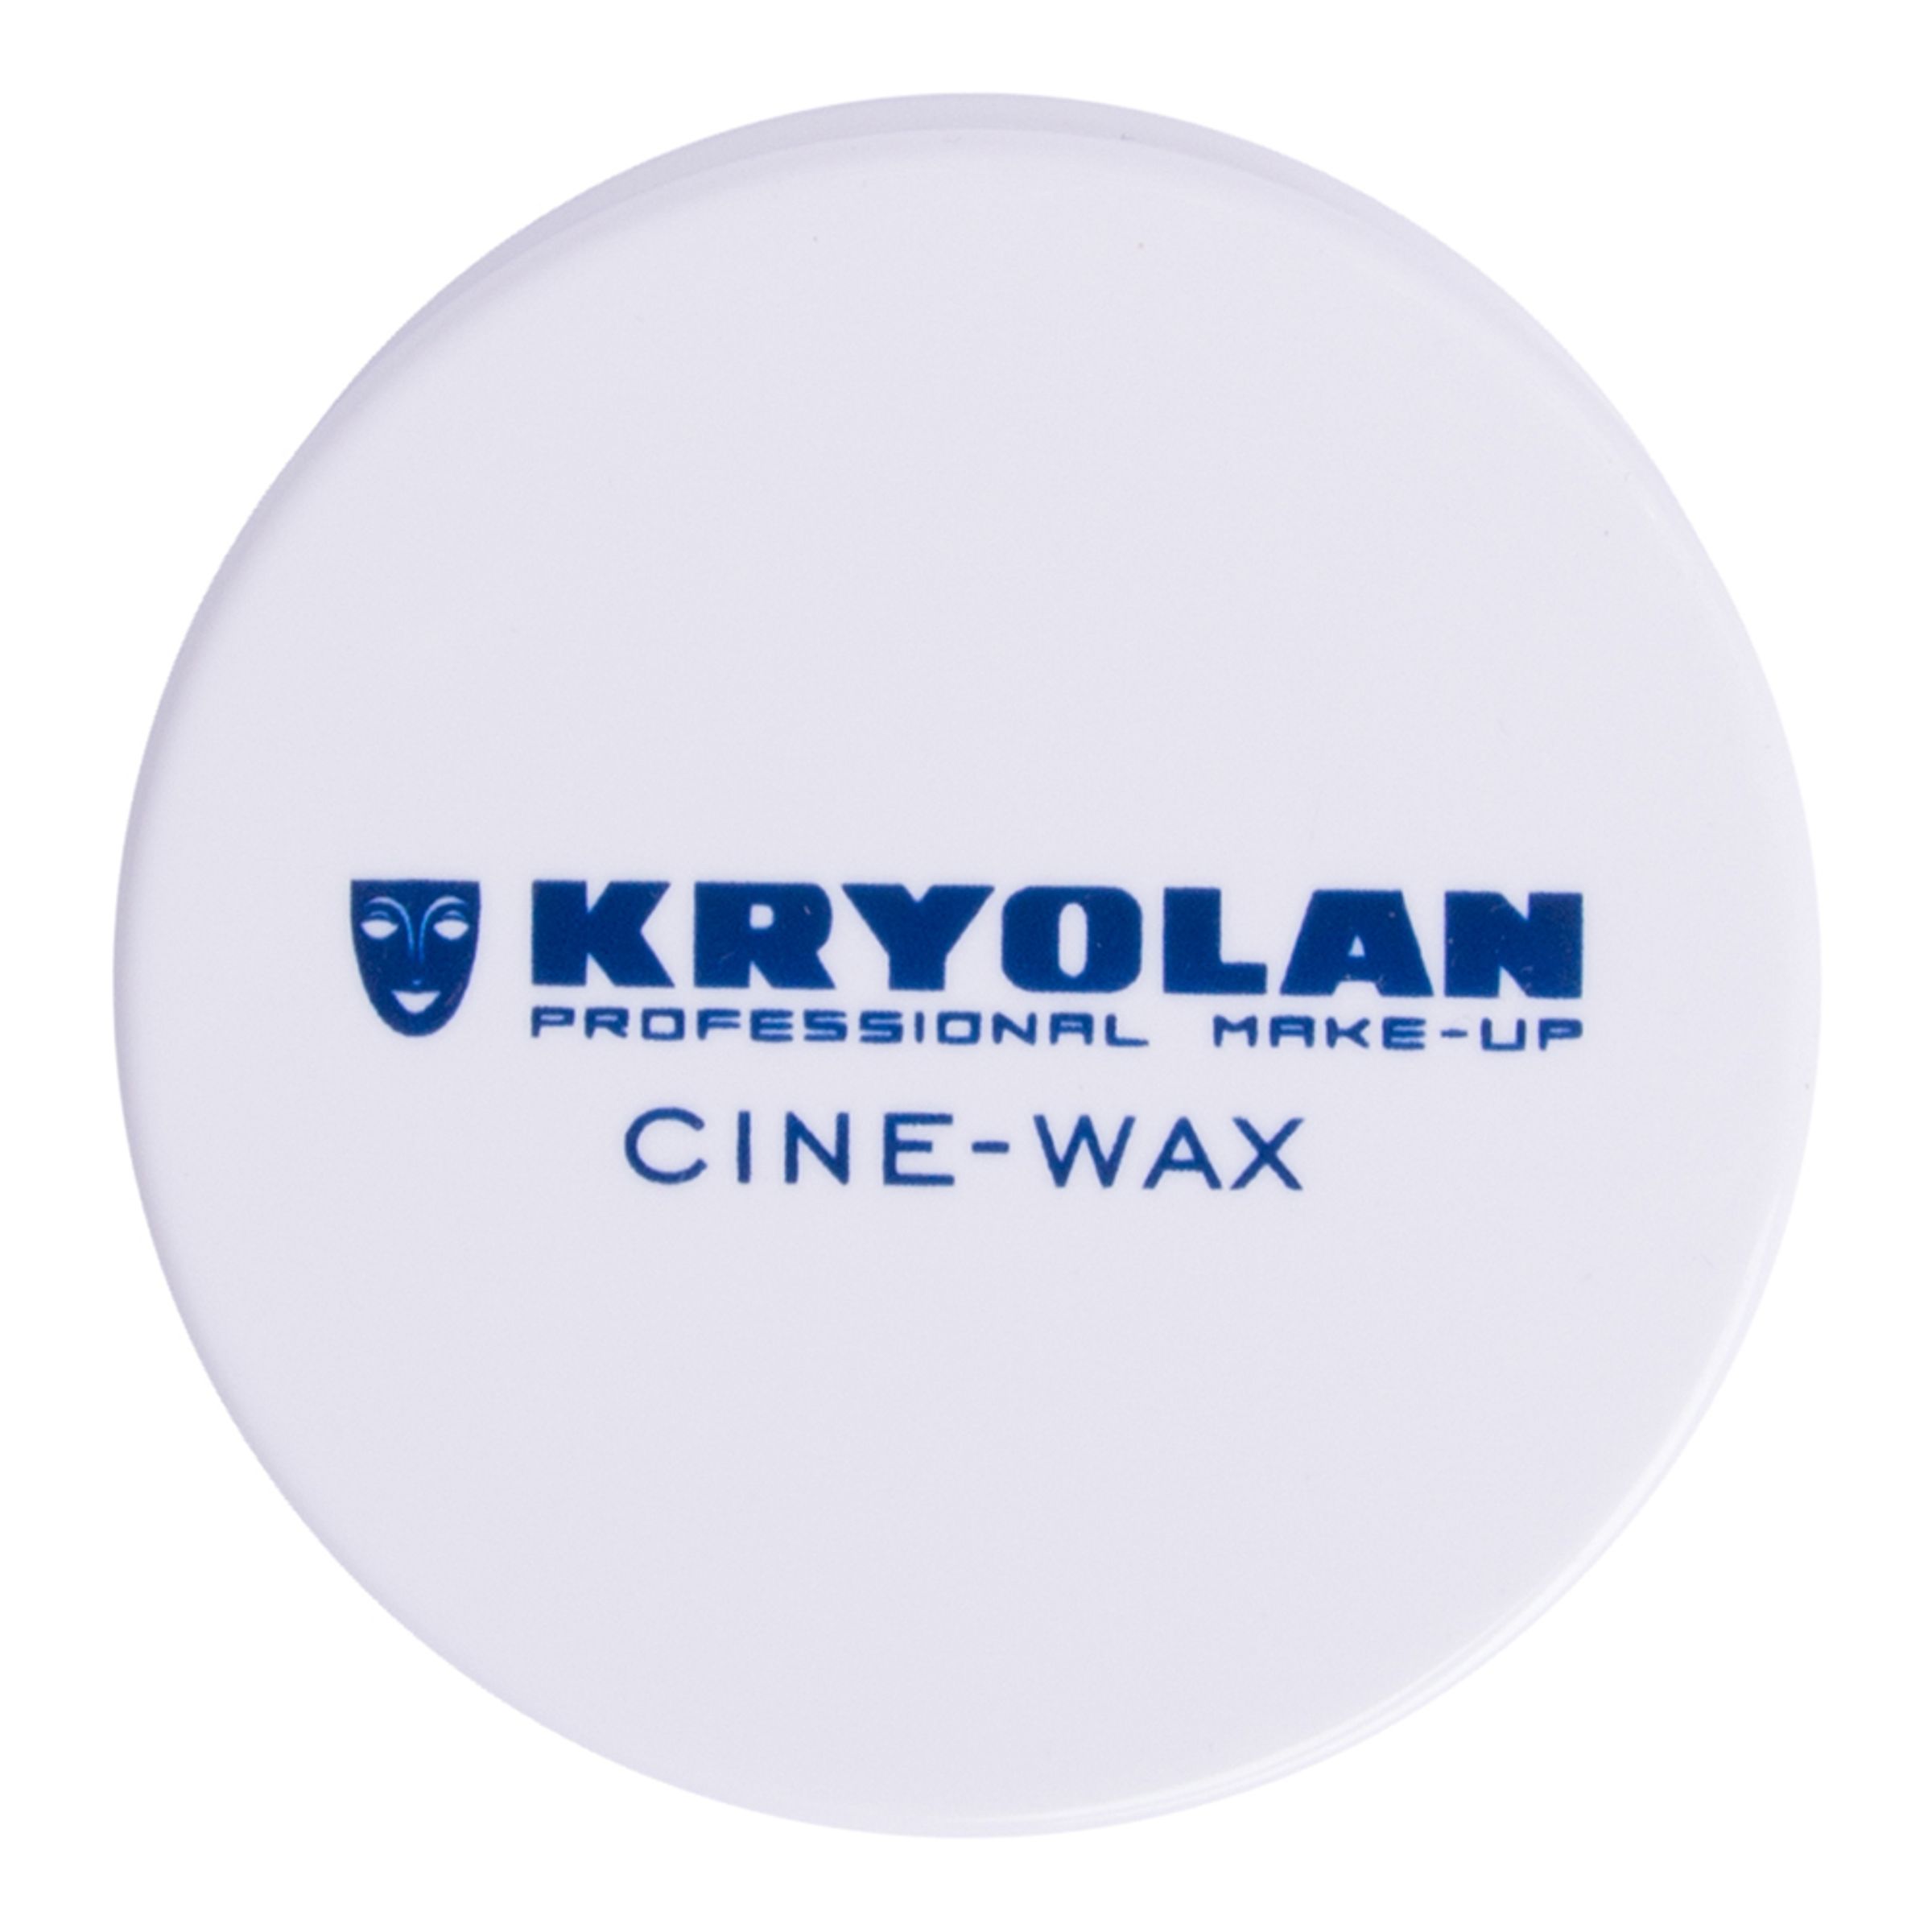 Kryolan Cine-Wax - 10 gram